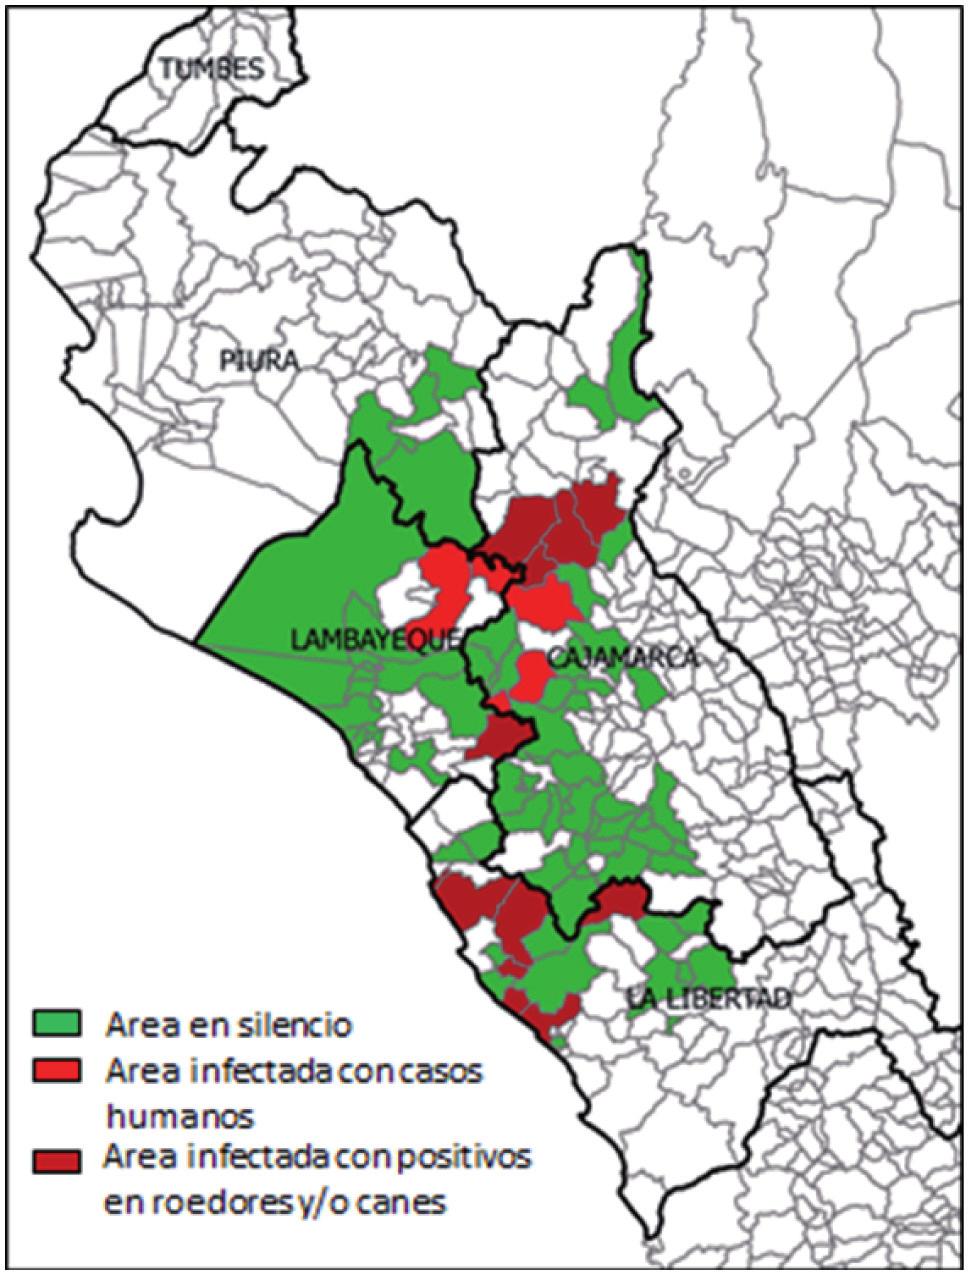 18 distritos, de los cuales, 12 distritos pertenecen al departamento de La Libertad y 6 distritos al departamento de Cajamarca.